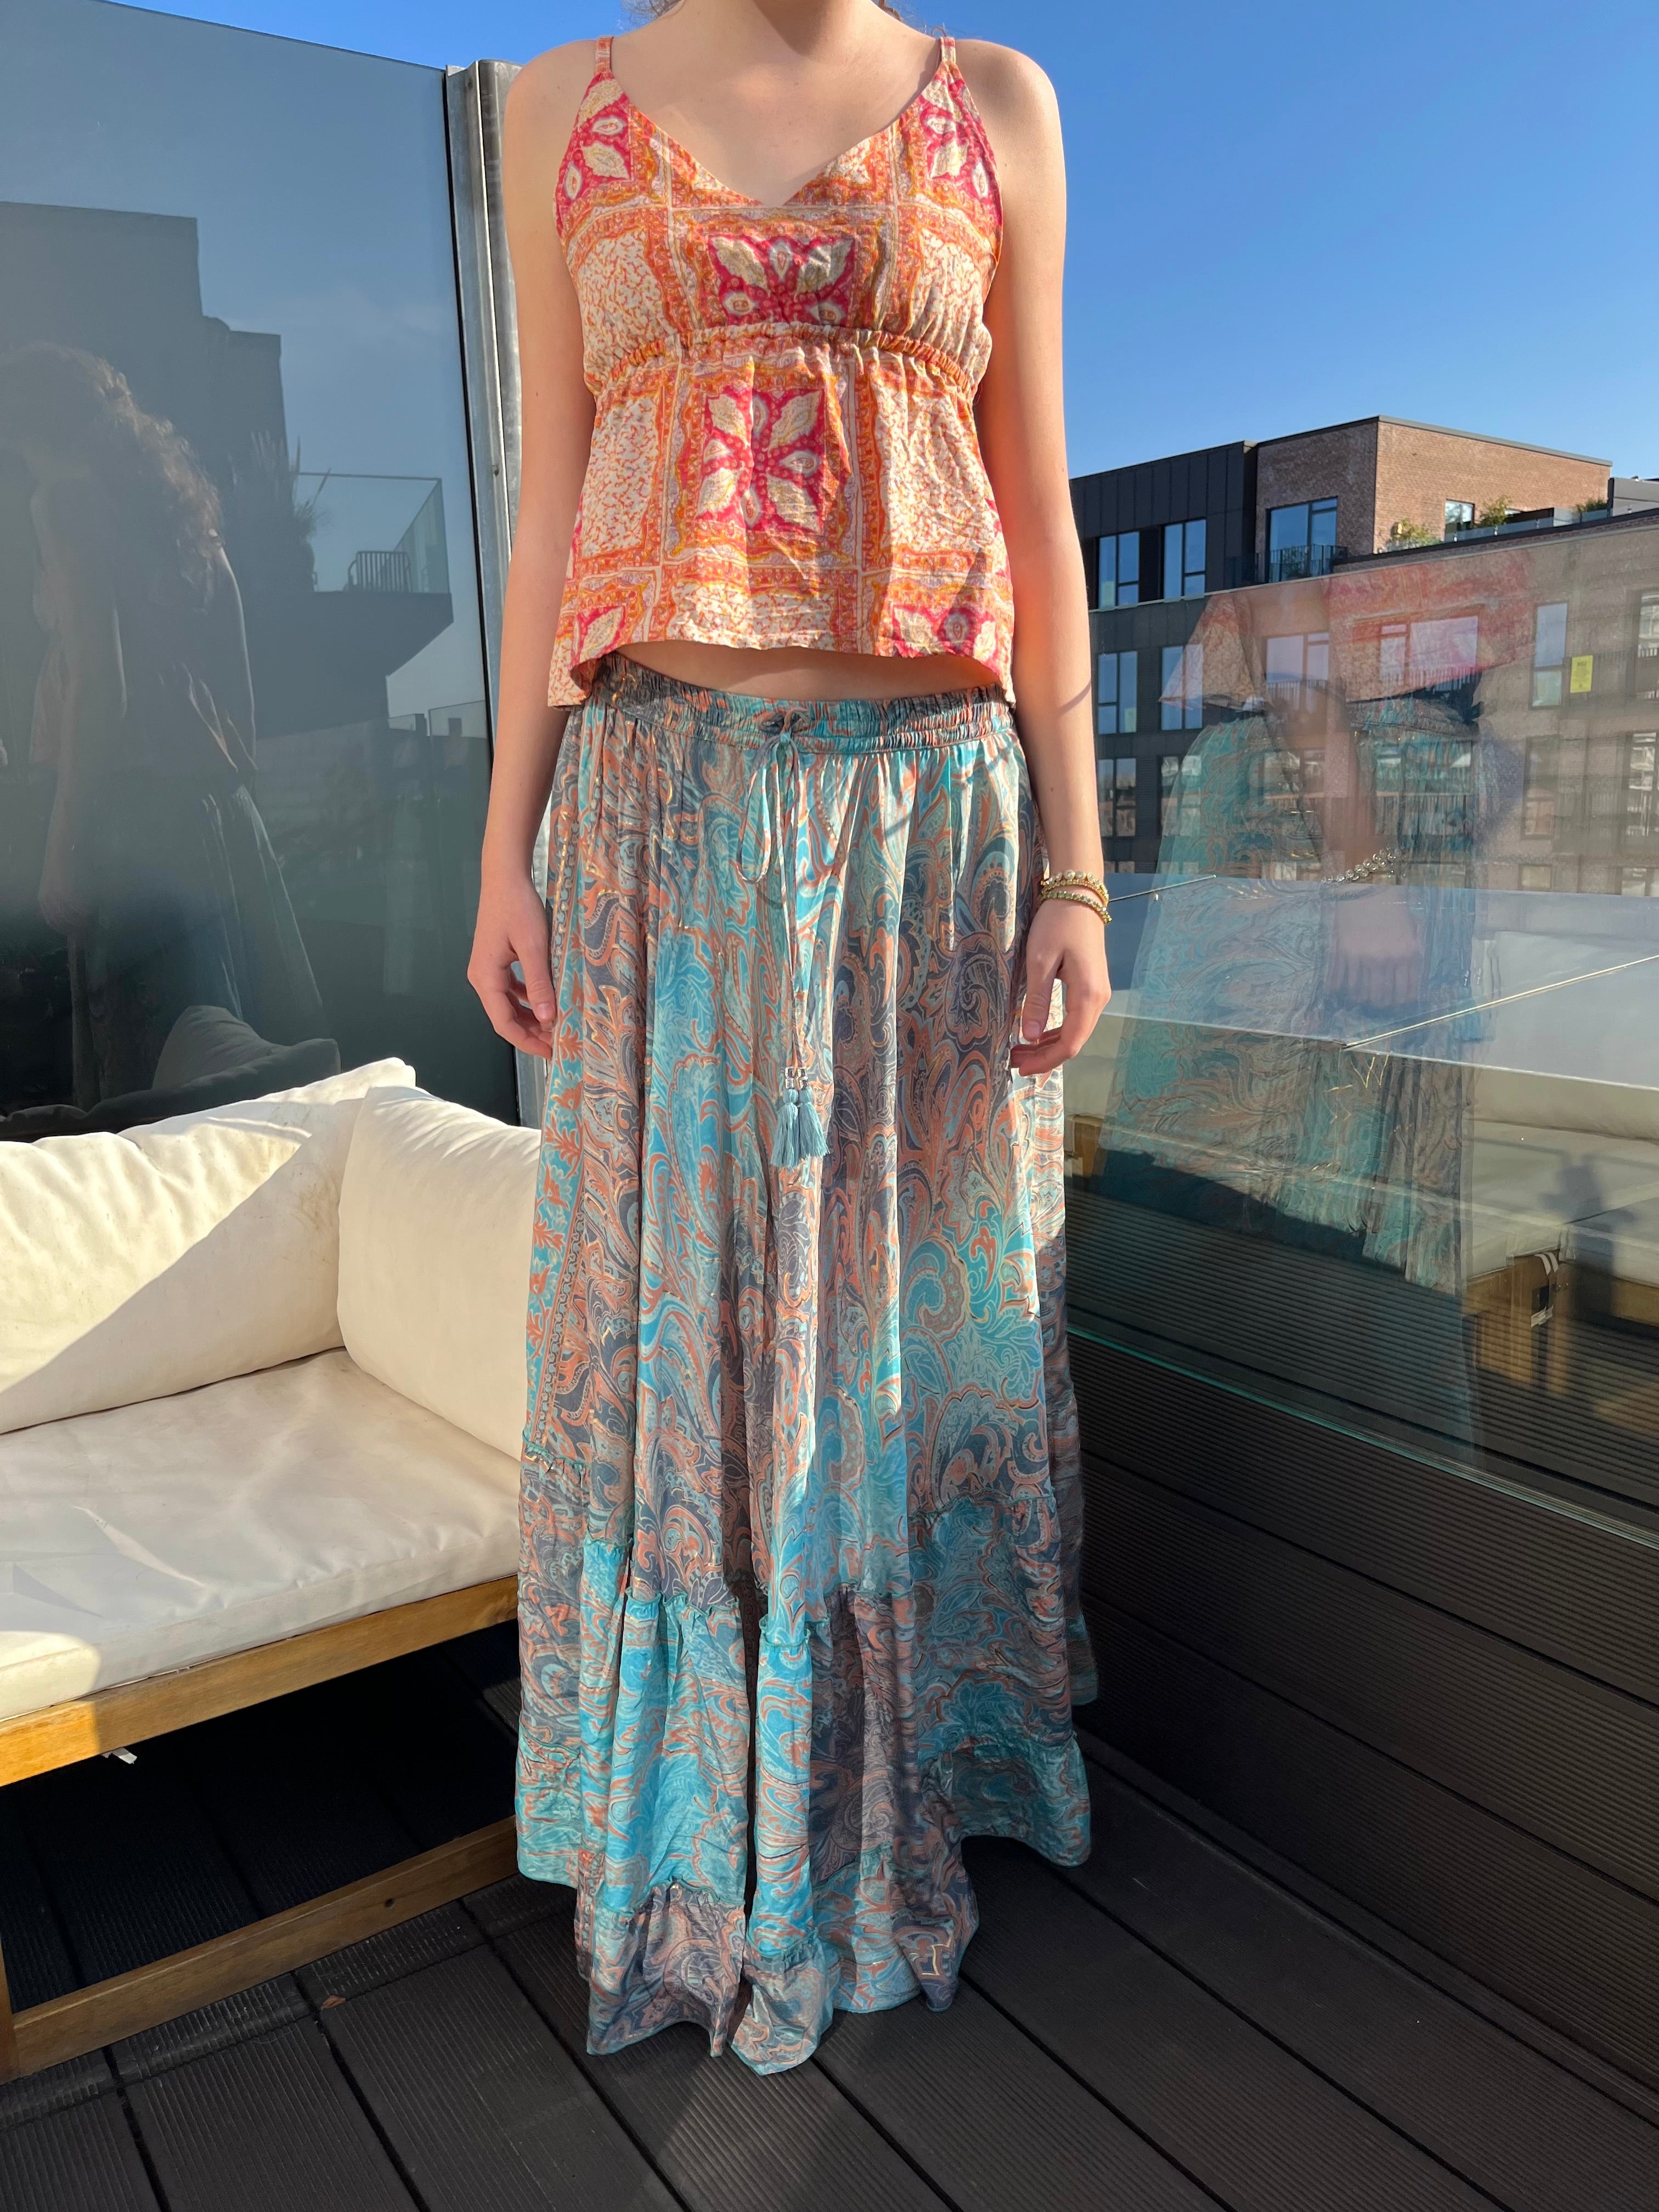 Ayla Gold Foil Maxi Skirt (1 Meter Long) - Light Blue